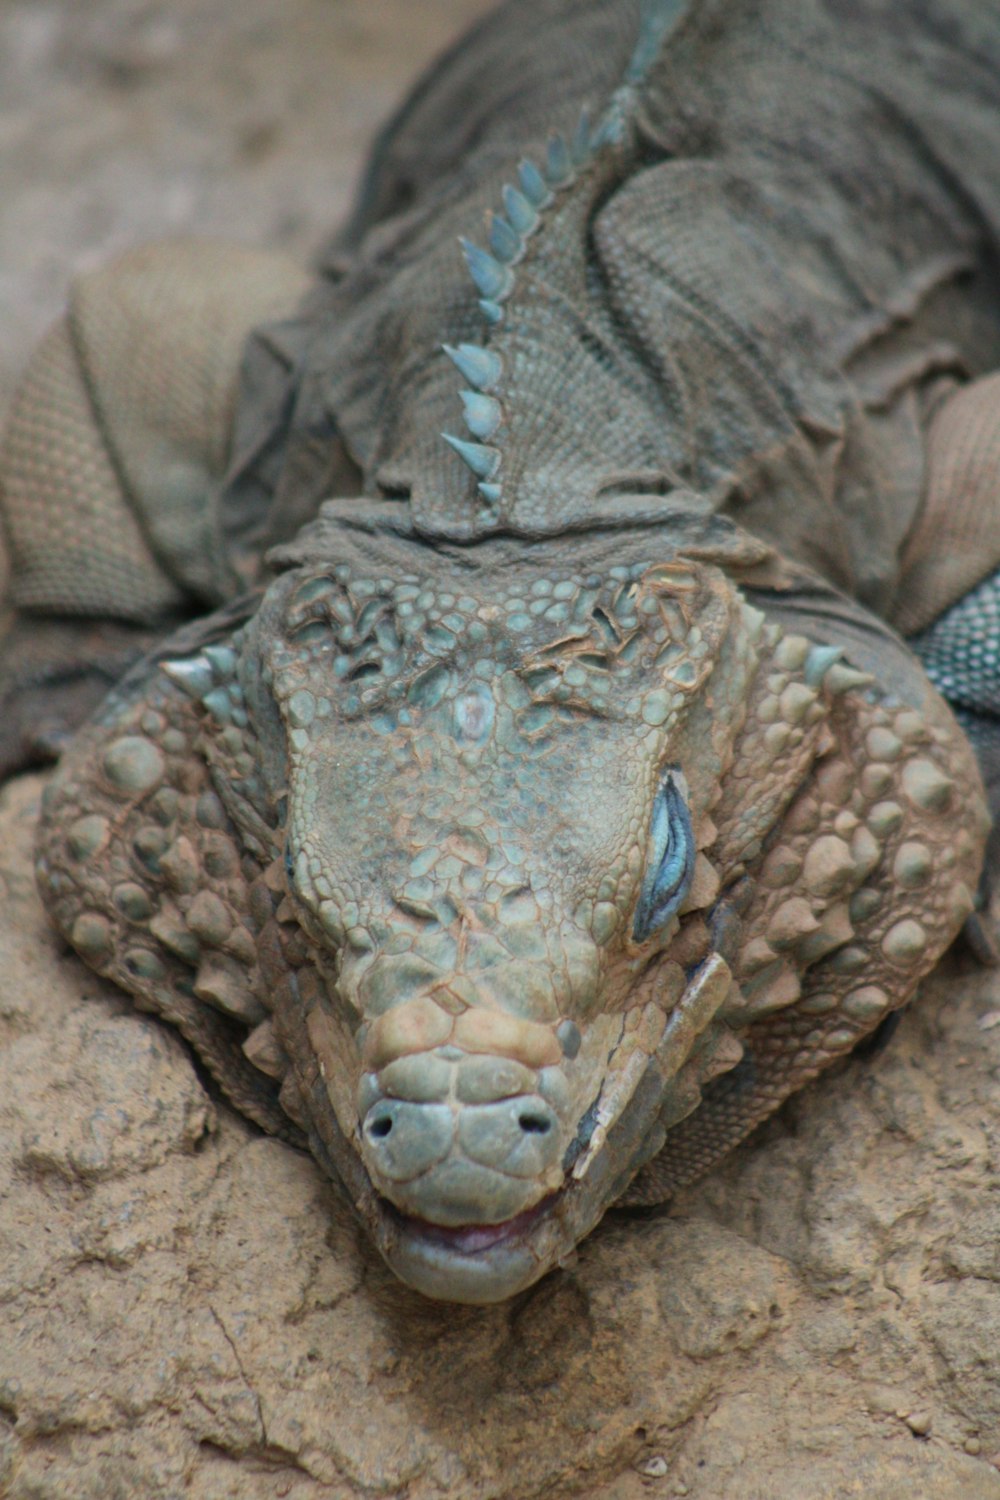 a close up of a lizard on a rock